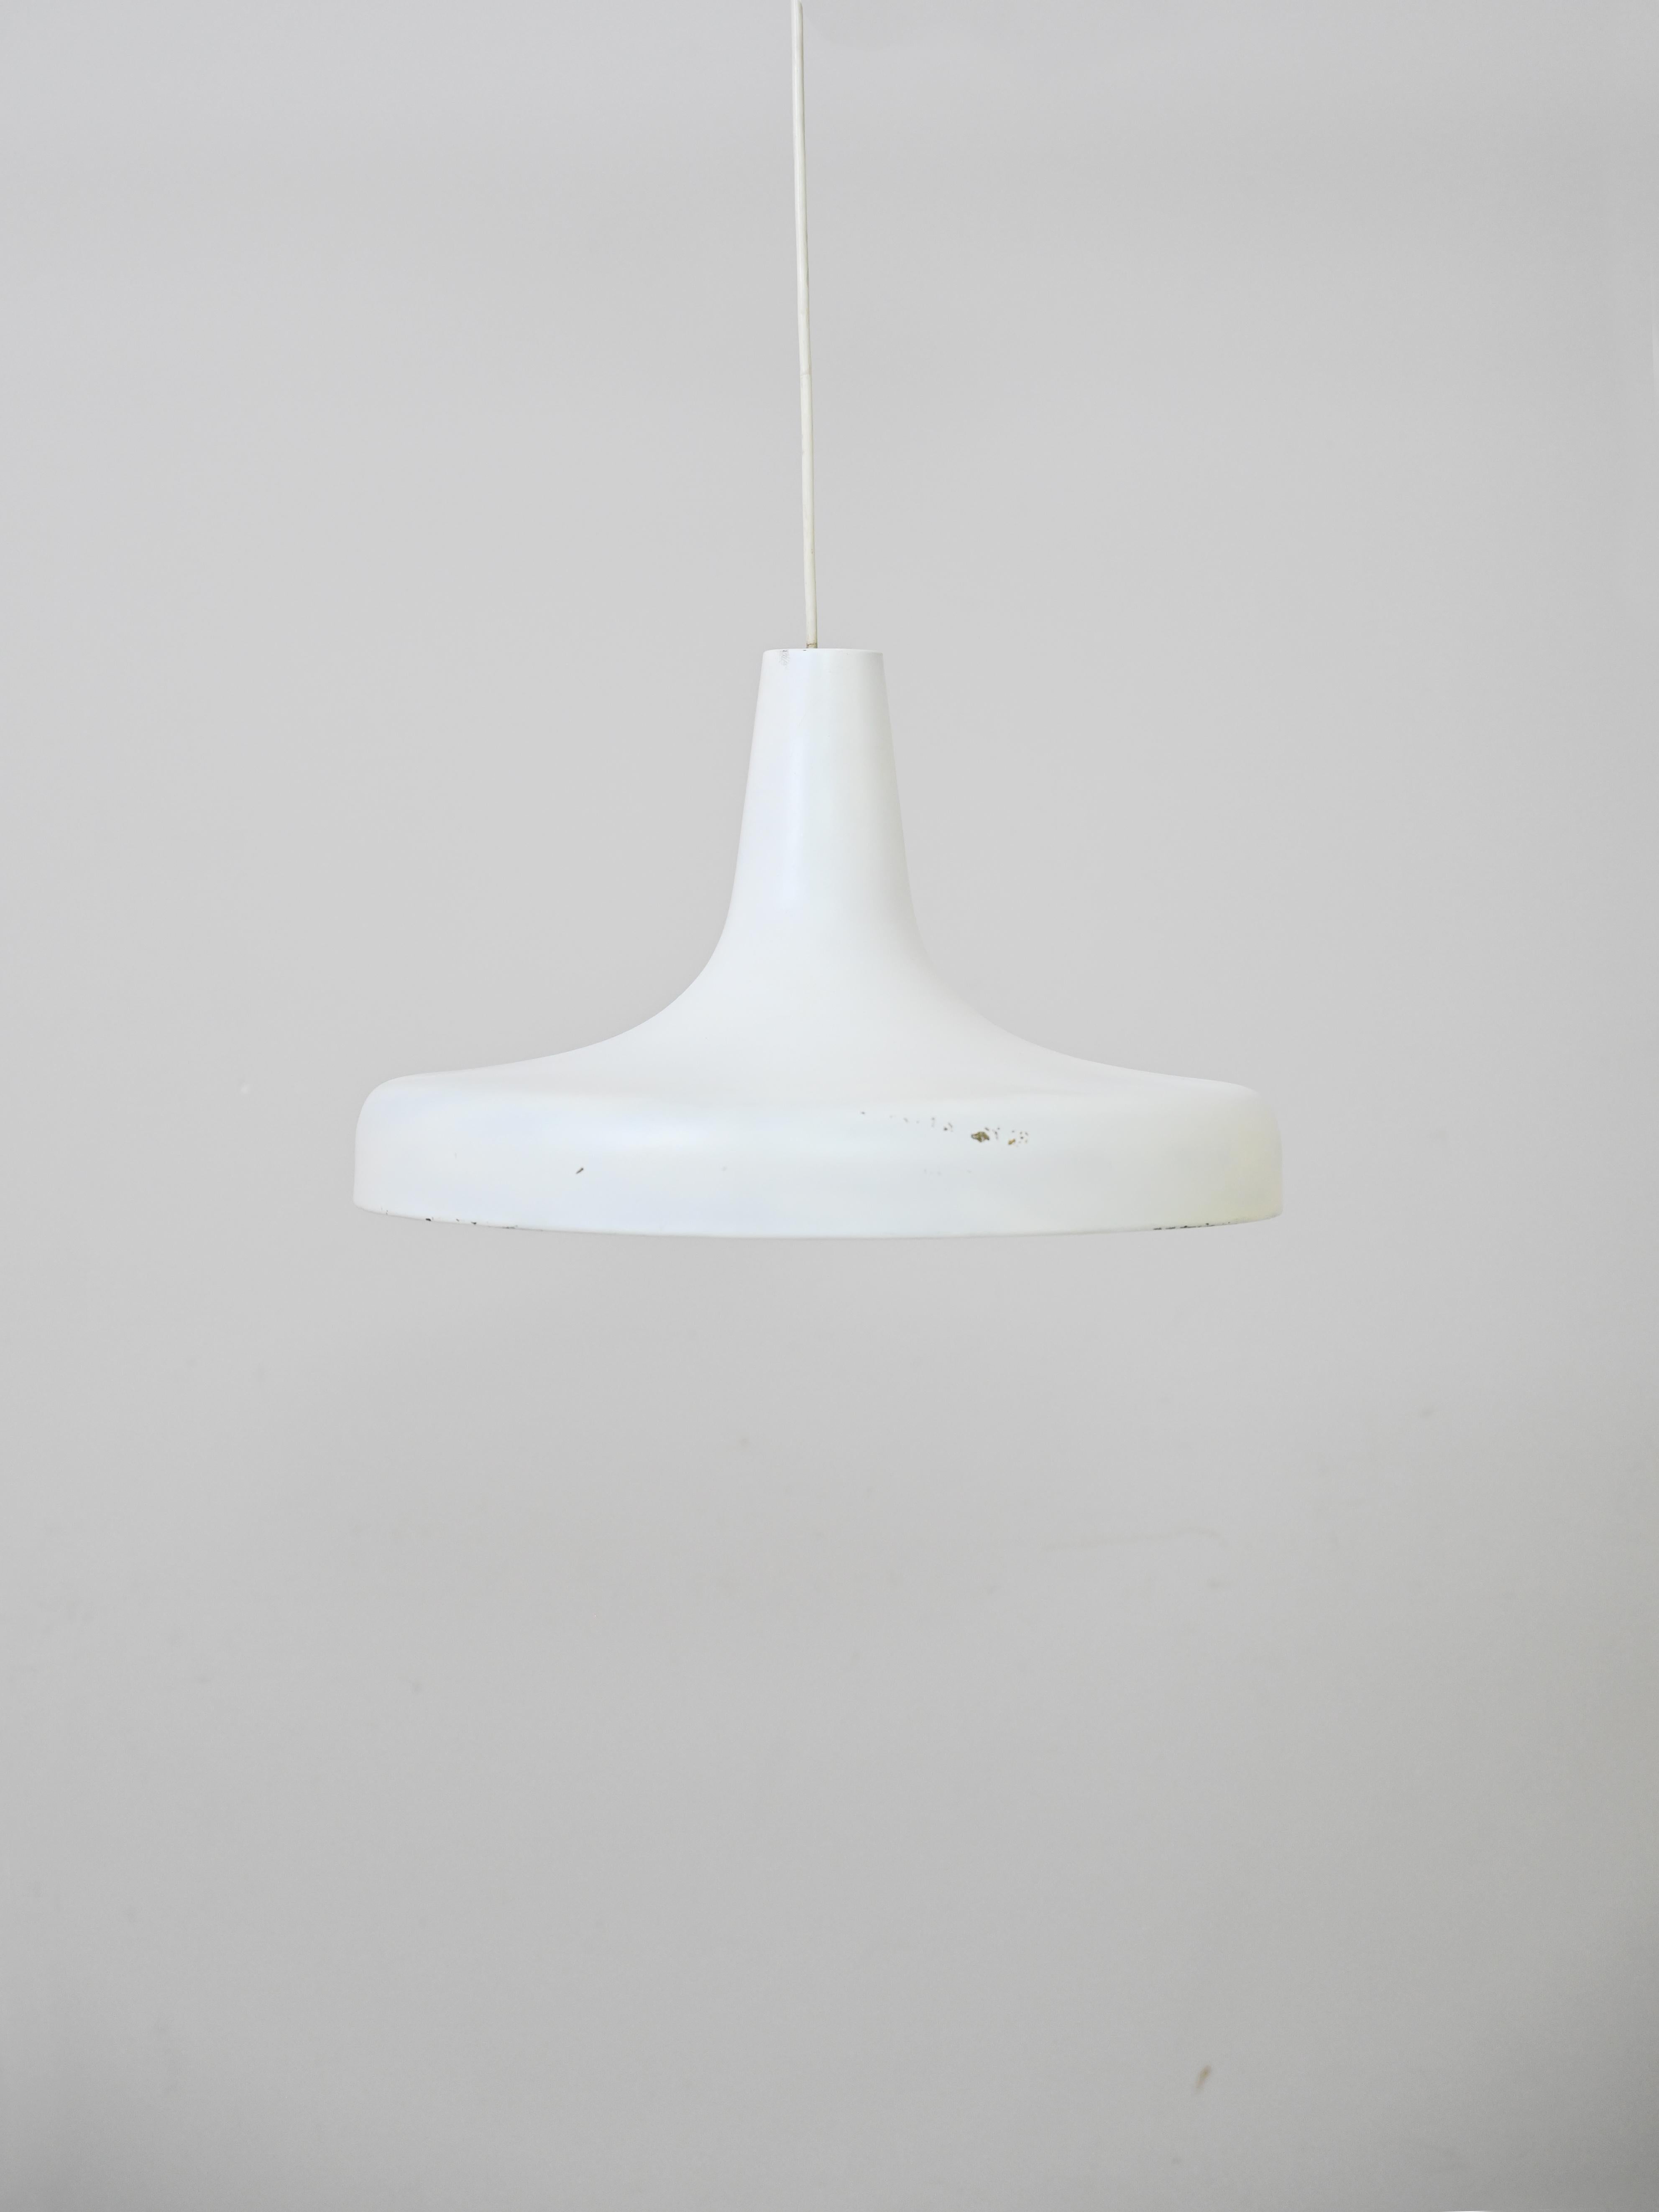 Lampe vintage en métal blanc
Cette lampe au design minimaliste retrace le goût nordique pour les lignes et les couleurs simples
claire. Un modèle de luminaire suspendu qui se prête à de nombreuses utilisations, mais qui convient le mieux